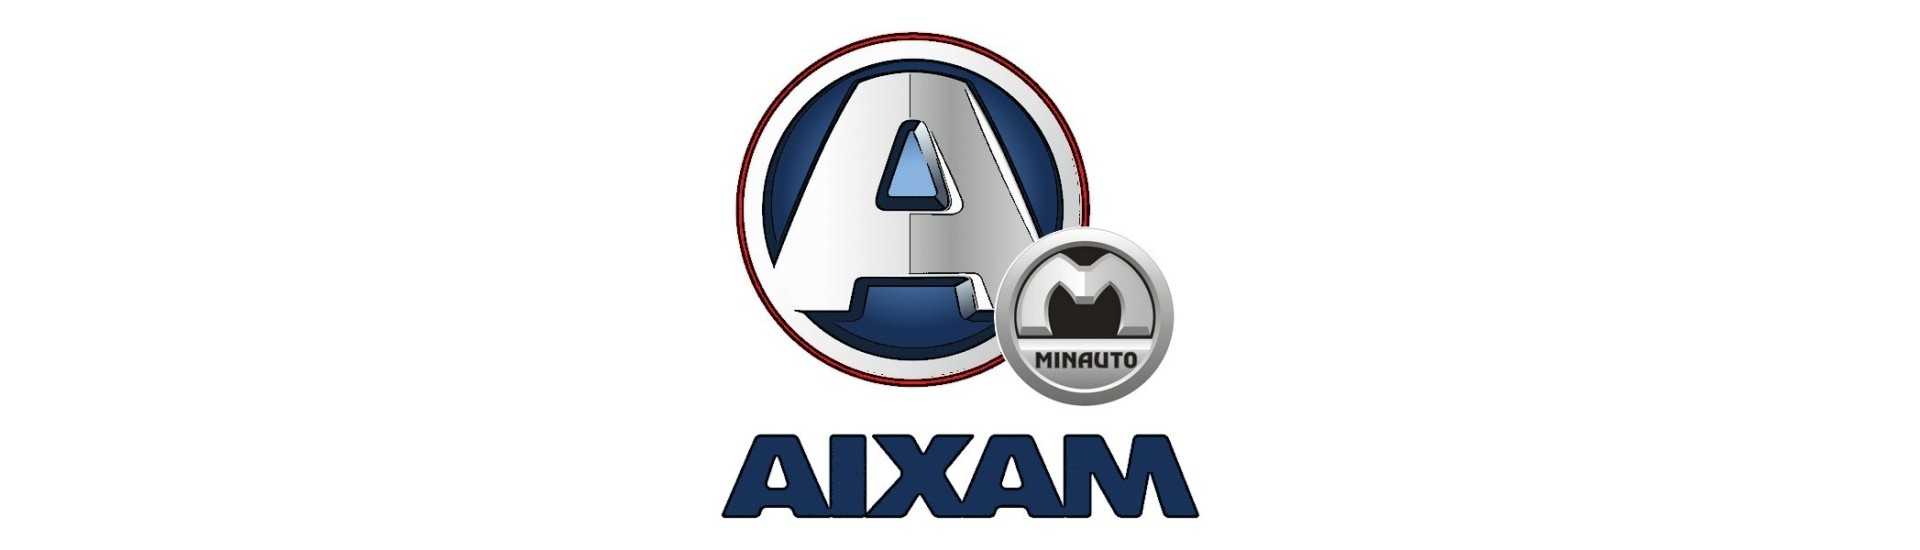 Kit manutenzione al miglior prezzo dell'auto senza permesso Aixam Minauto